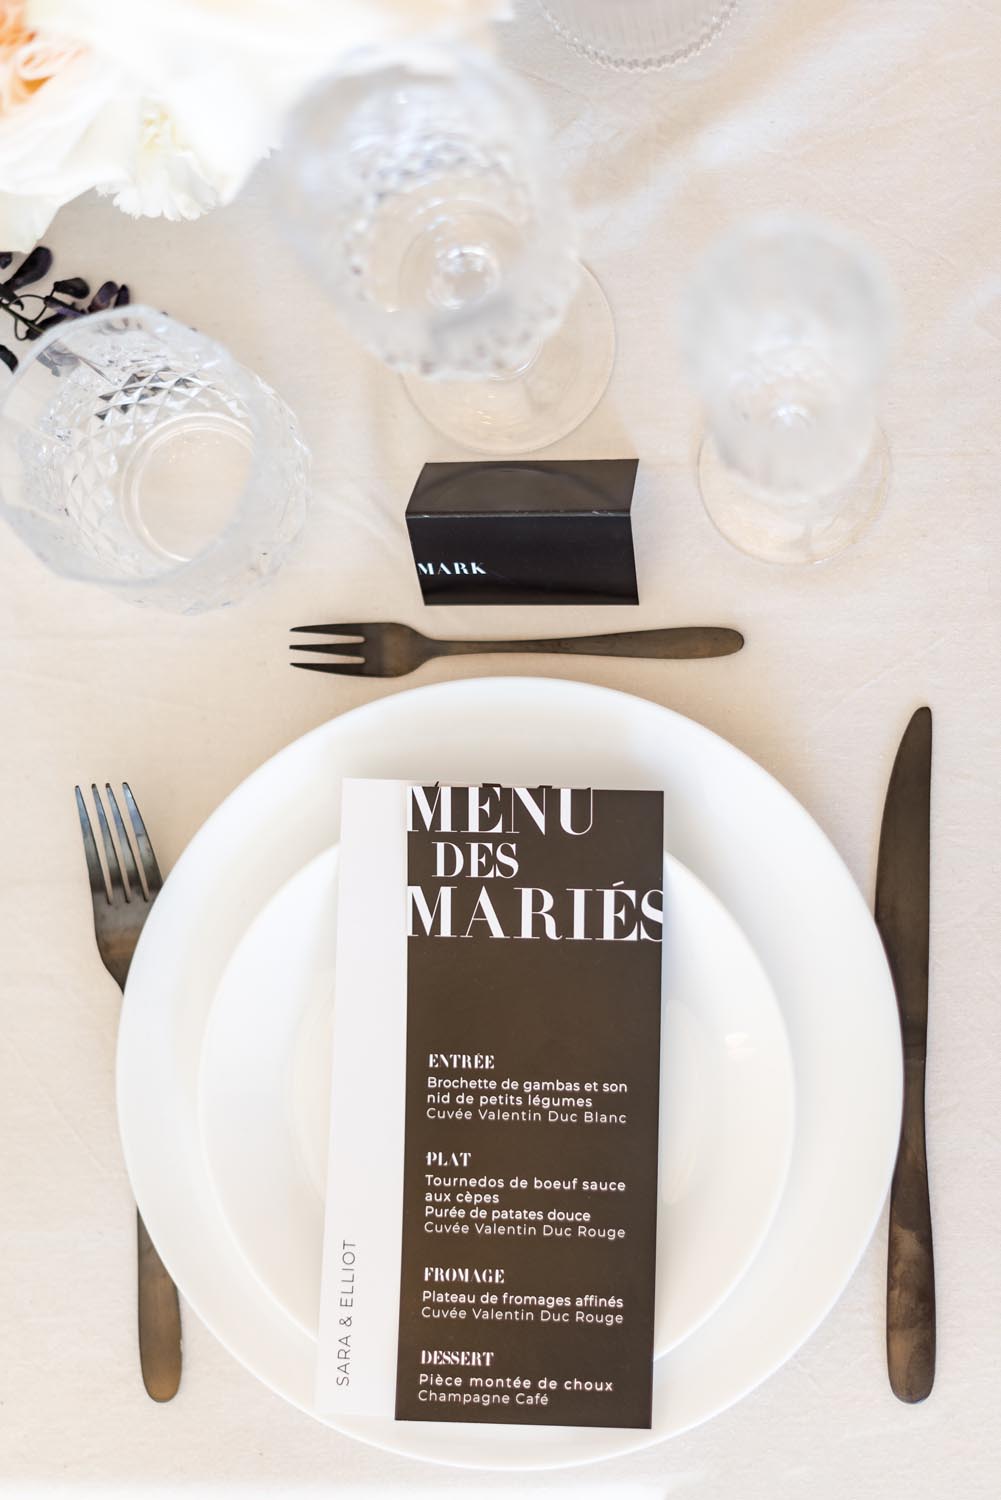 Mariage décoration table black and white blanc noir moderne graphique minimalist élégant